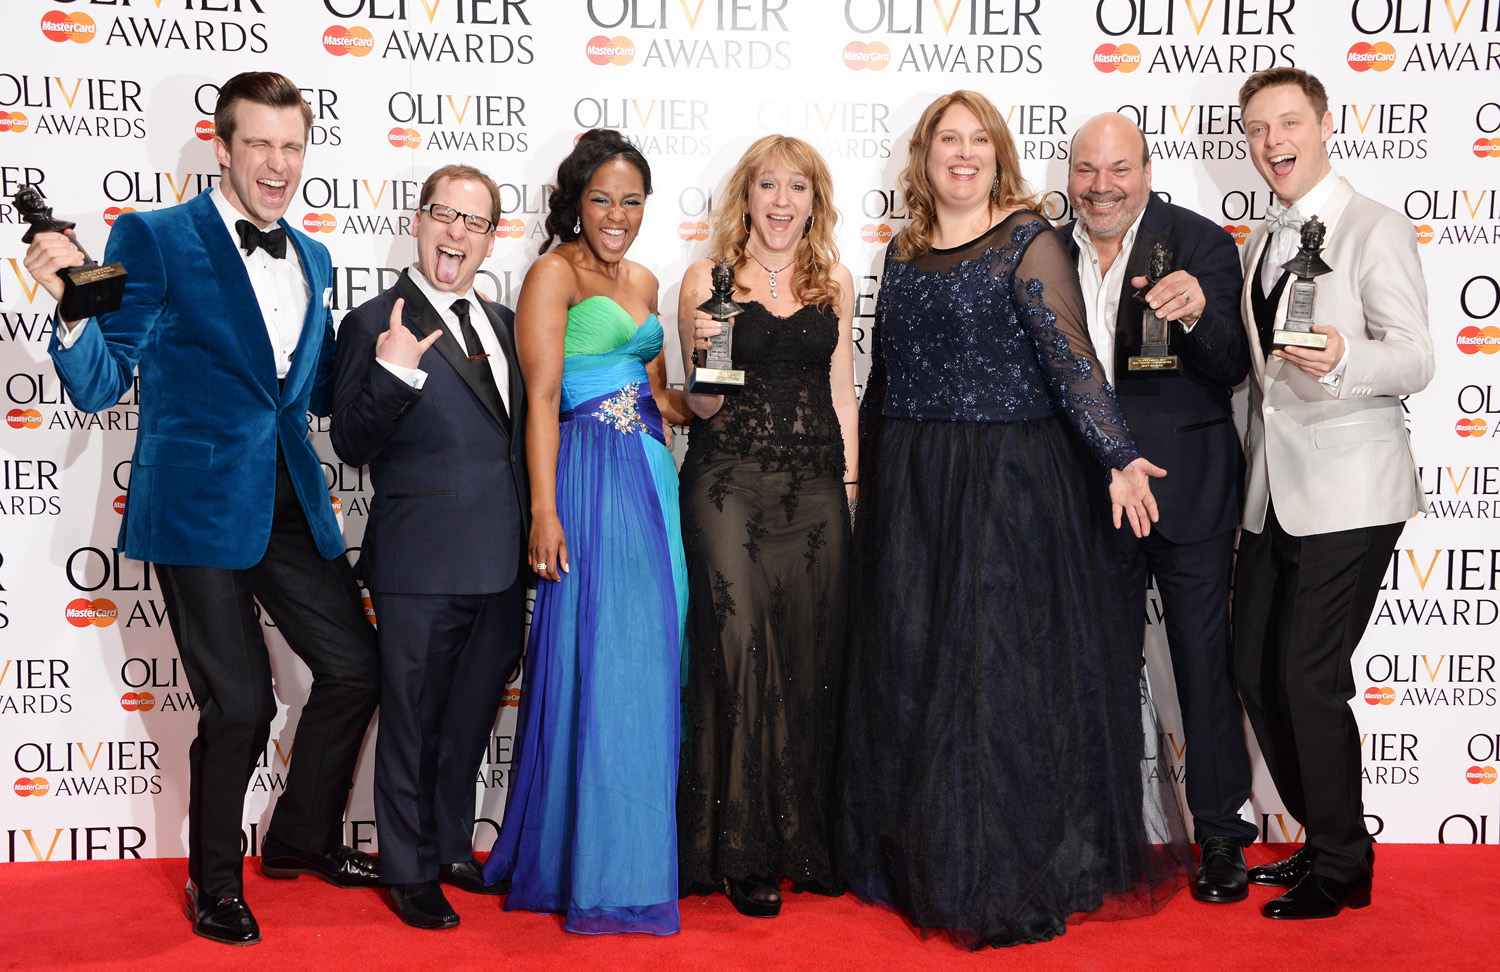 Laurence Olivier Awards - Press Room